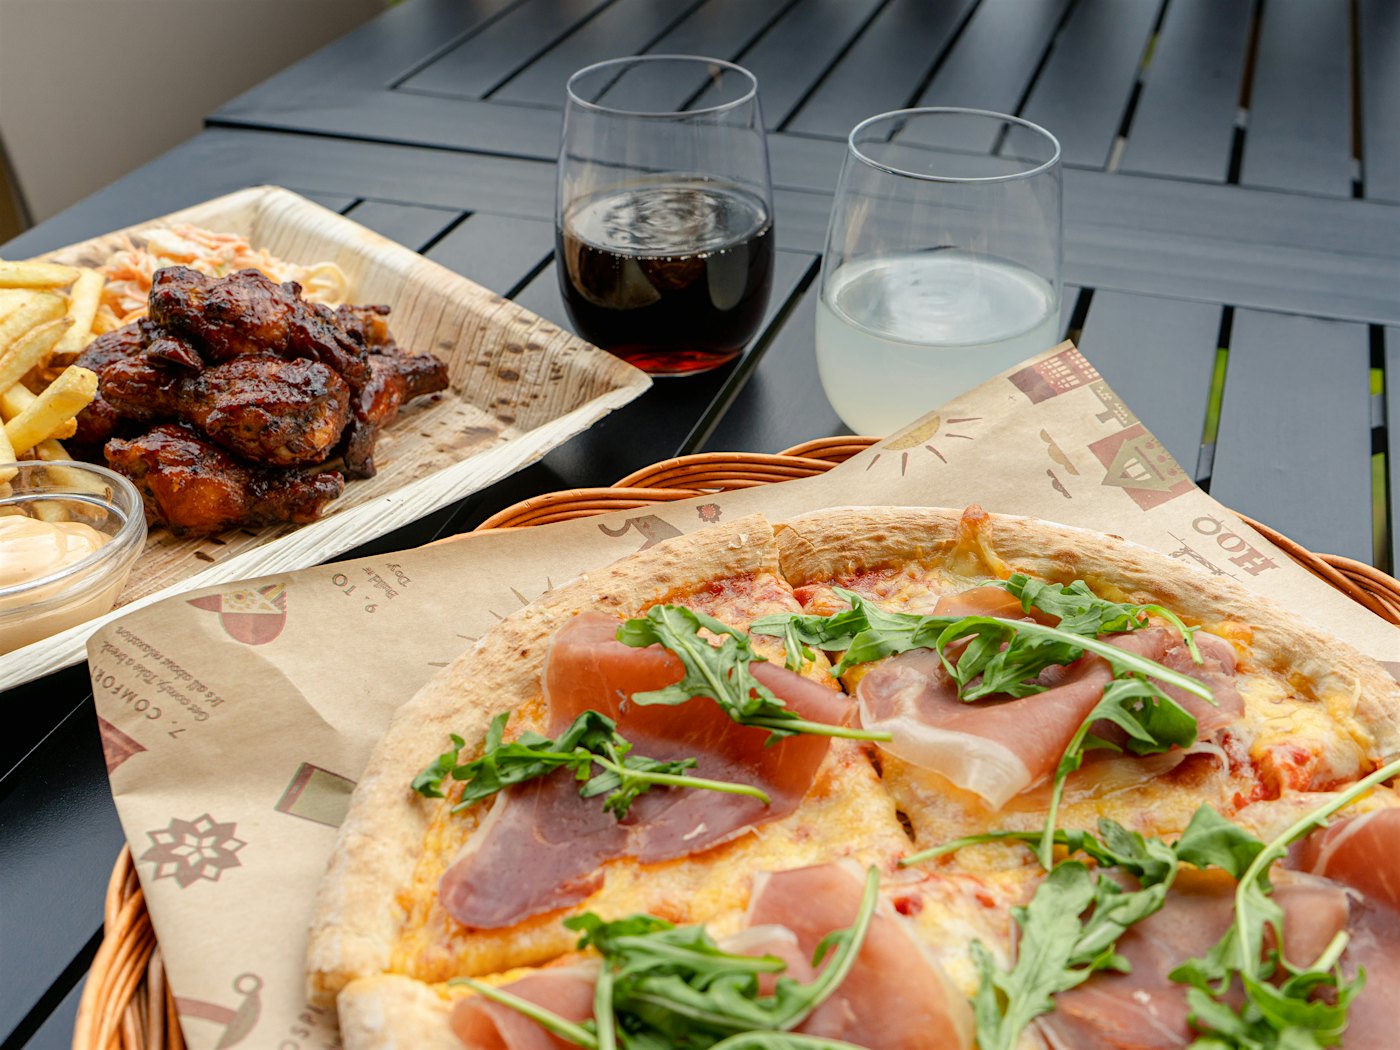 Pizza på pizzbrett med parmaskinke og ruccola halvvei inn i bildet. Buffalo wings med pommes frittes, er halvveis inn i bildet til venstre. To glass med drikke. Alt på et svart bord.